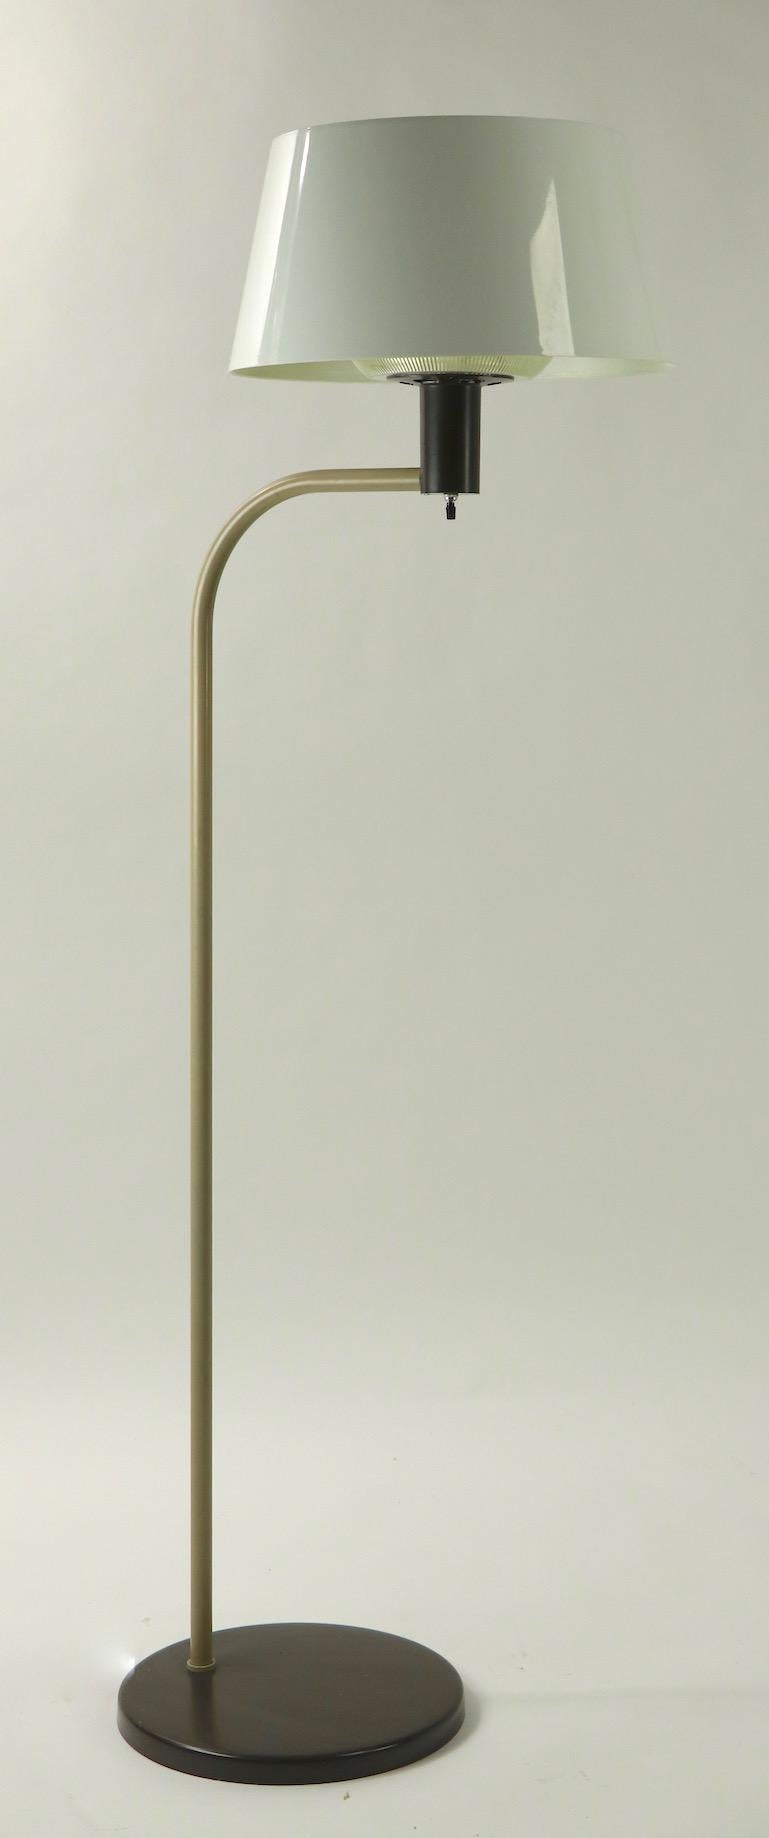 Gerald Thurston for Lightolier Floor Lamp 1